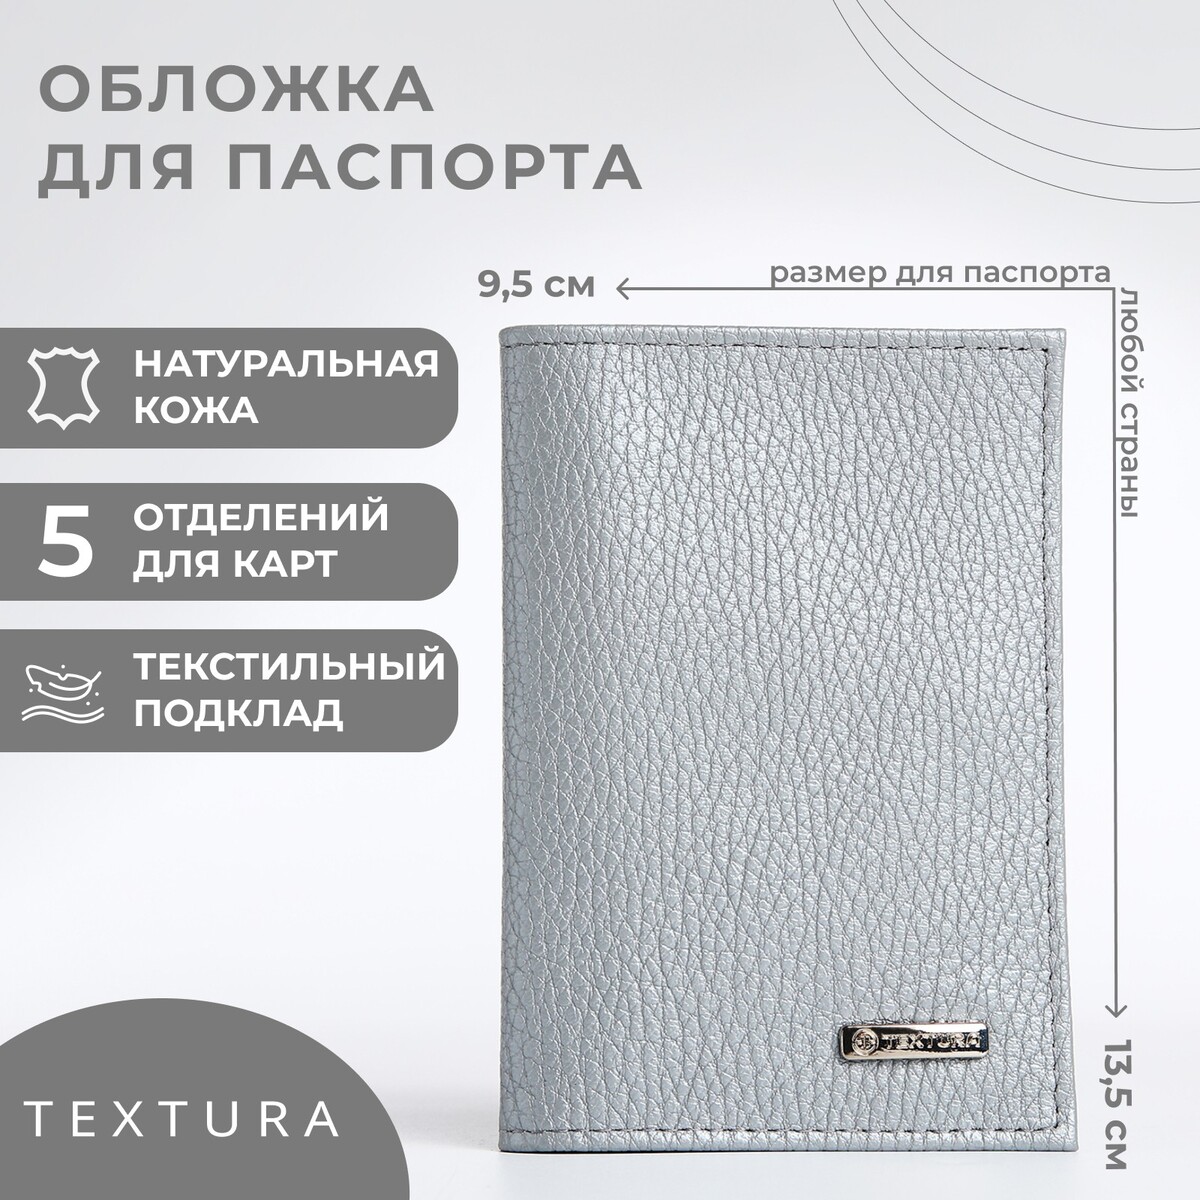 Обложка для паспорта textura, цвет серый TEXTURA